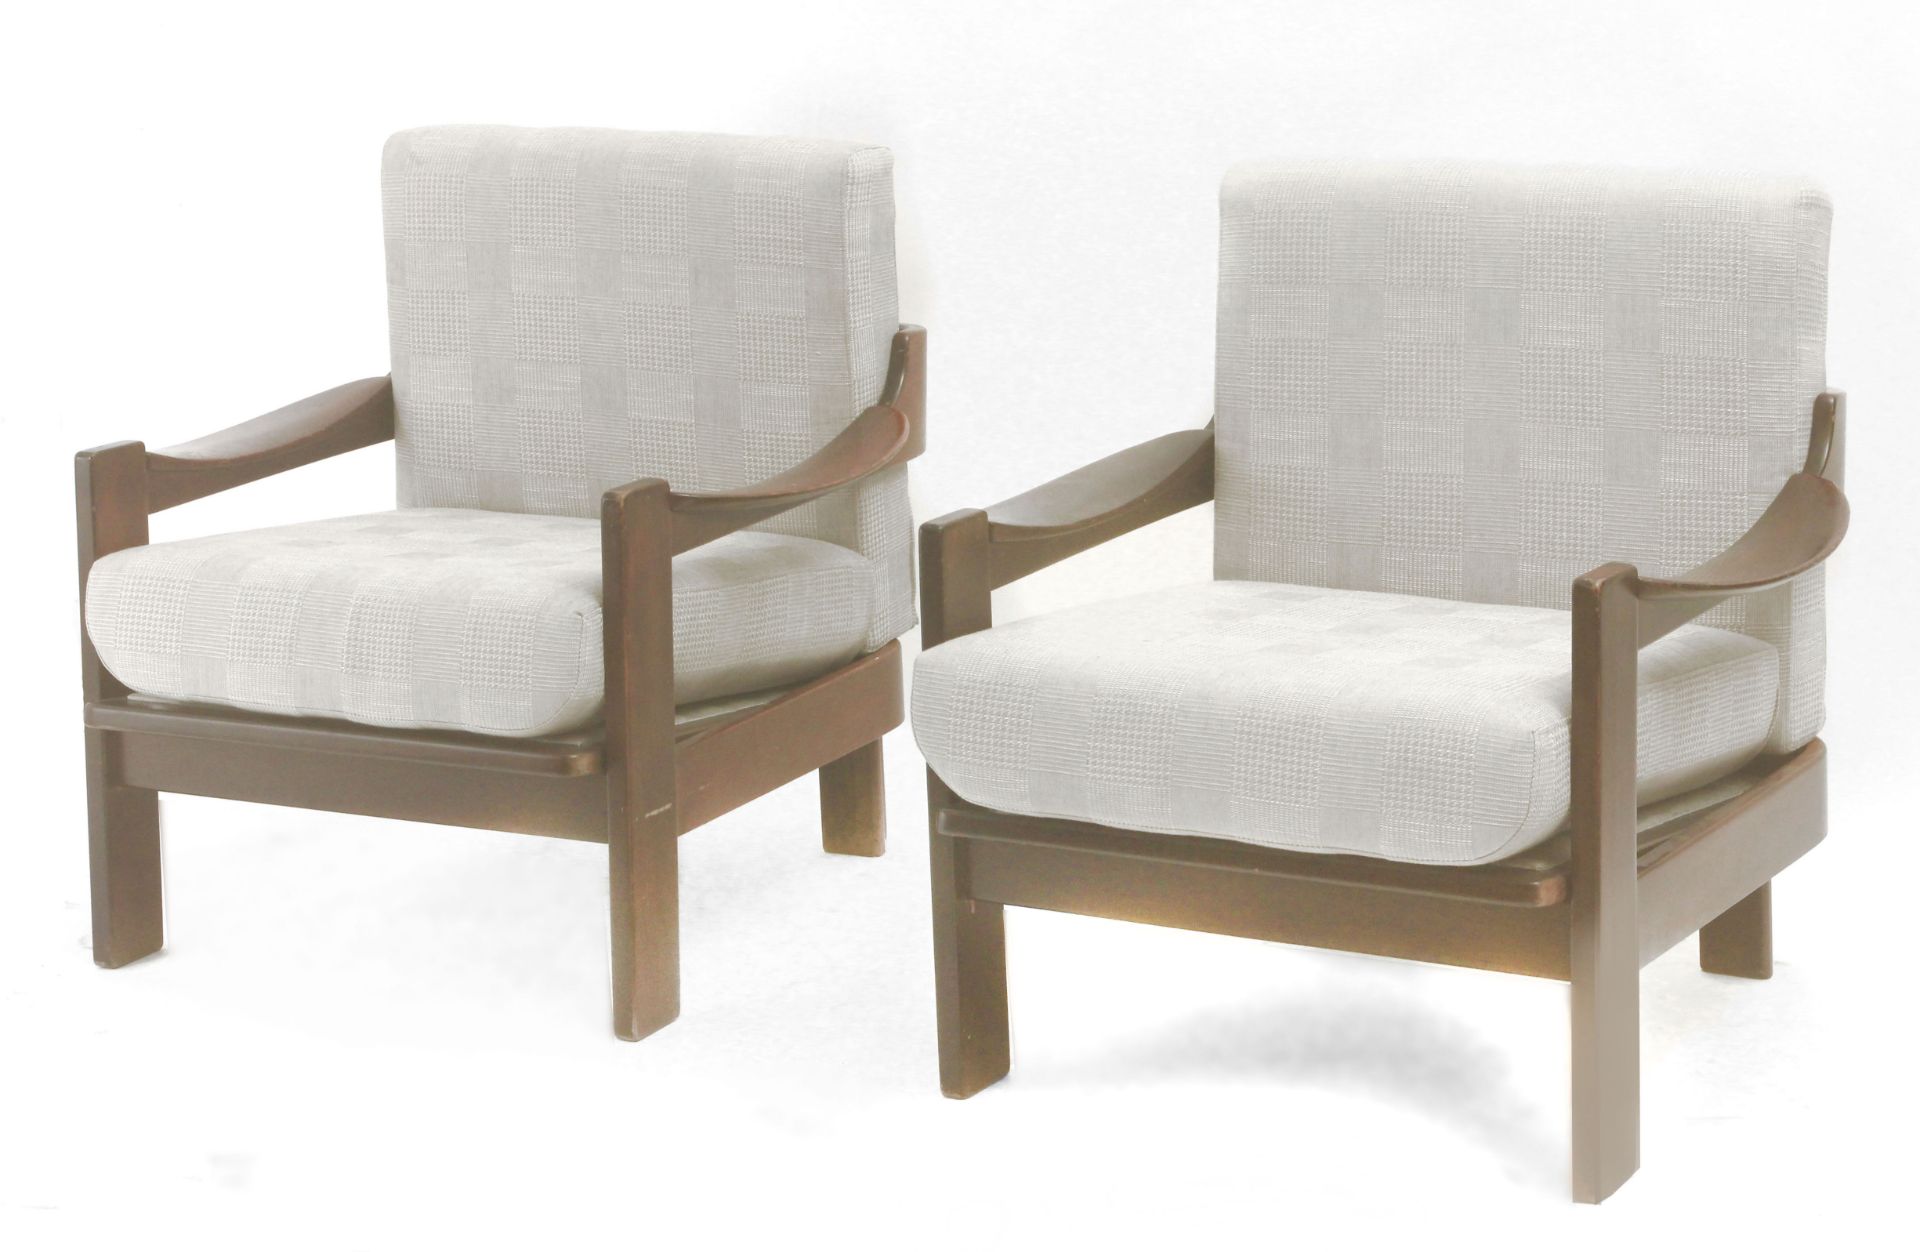 AG Barcelona. A pair of walnut armchairs circa 1970